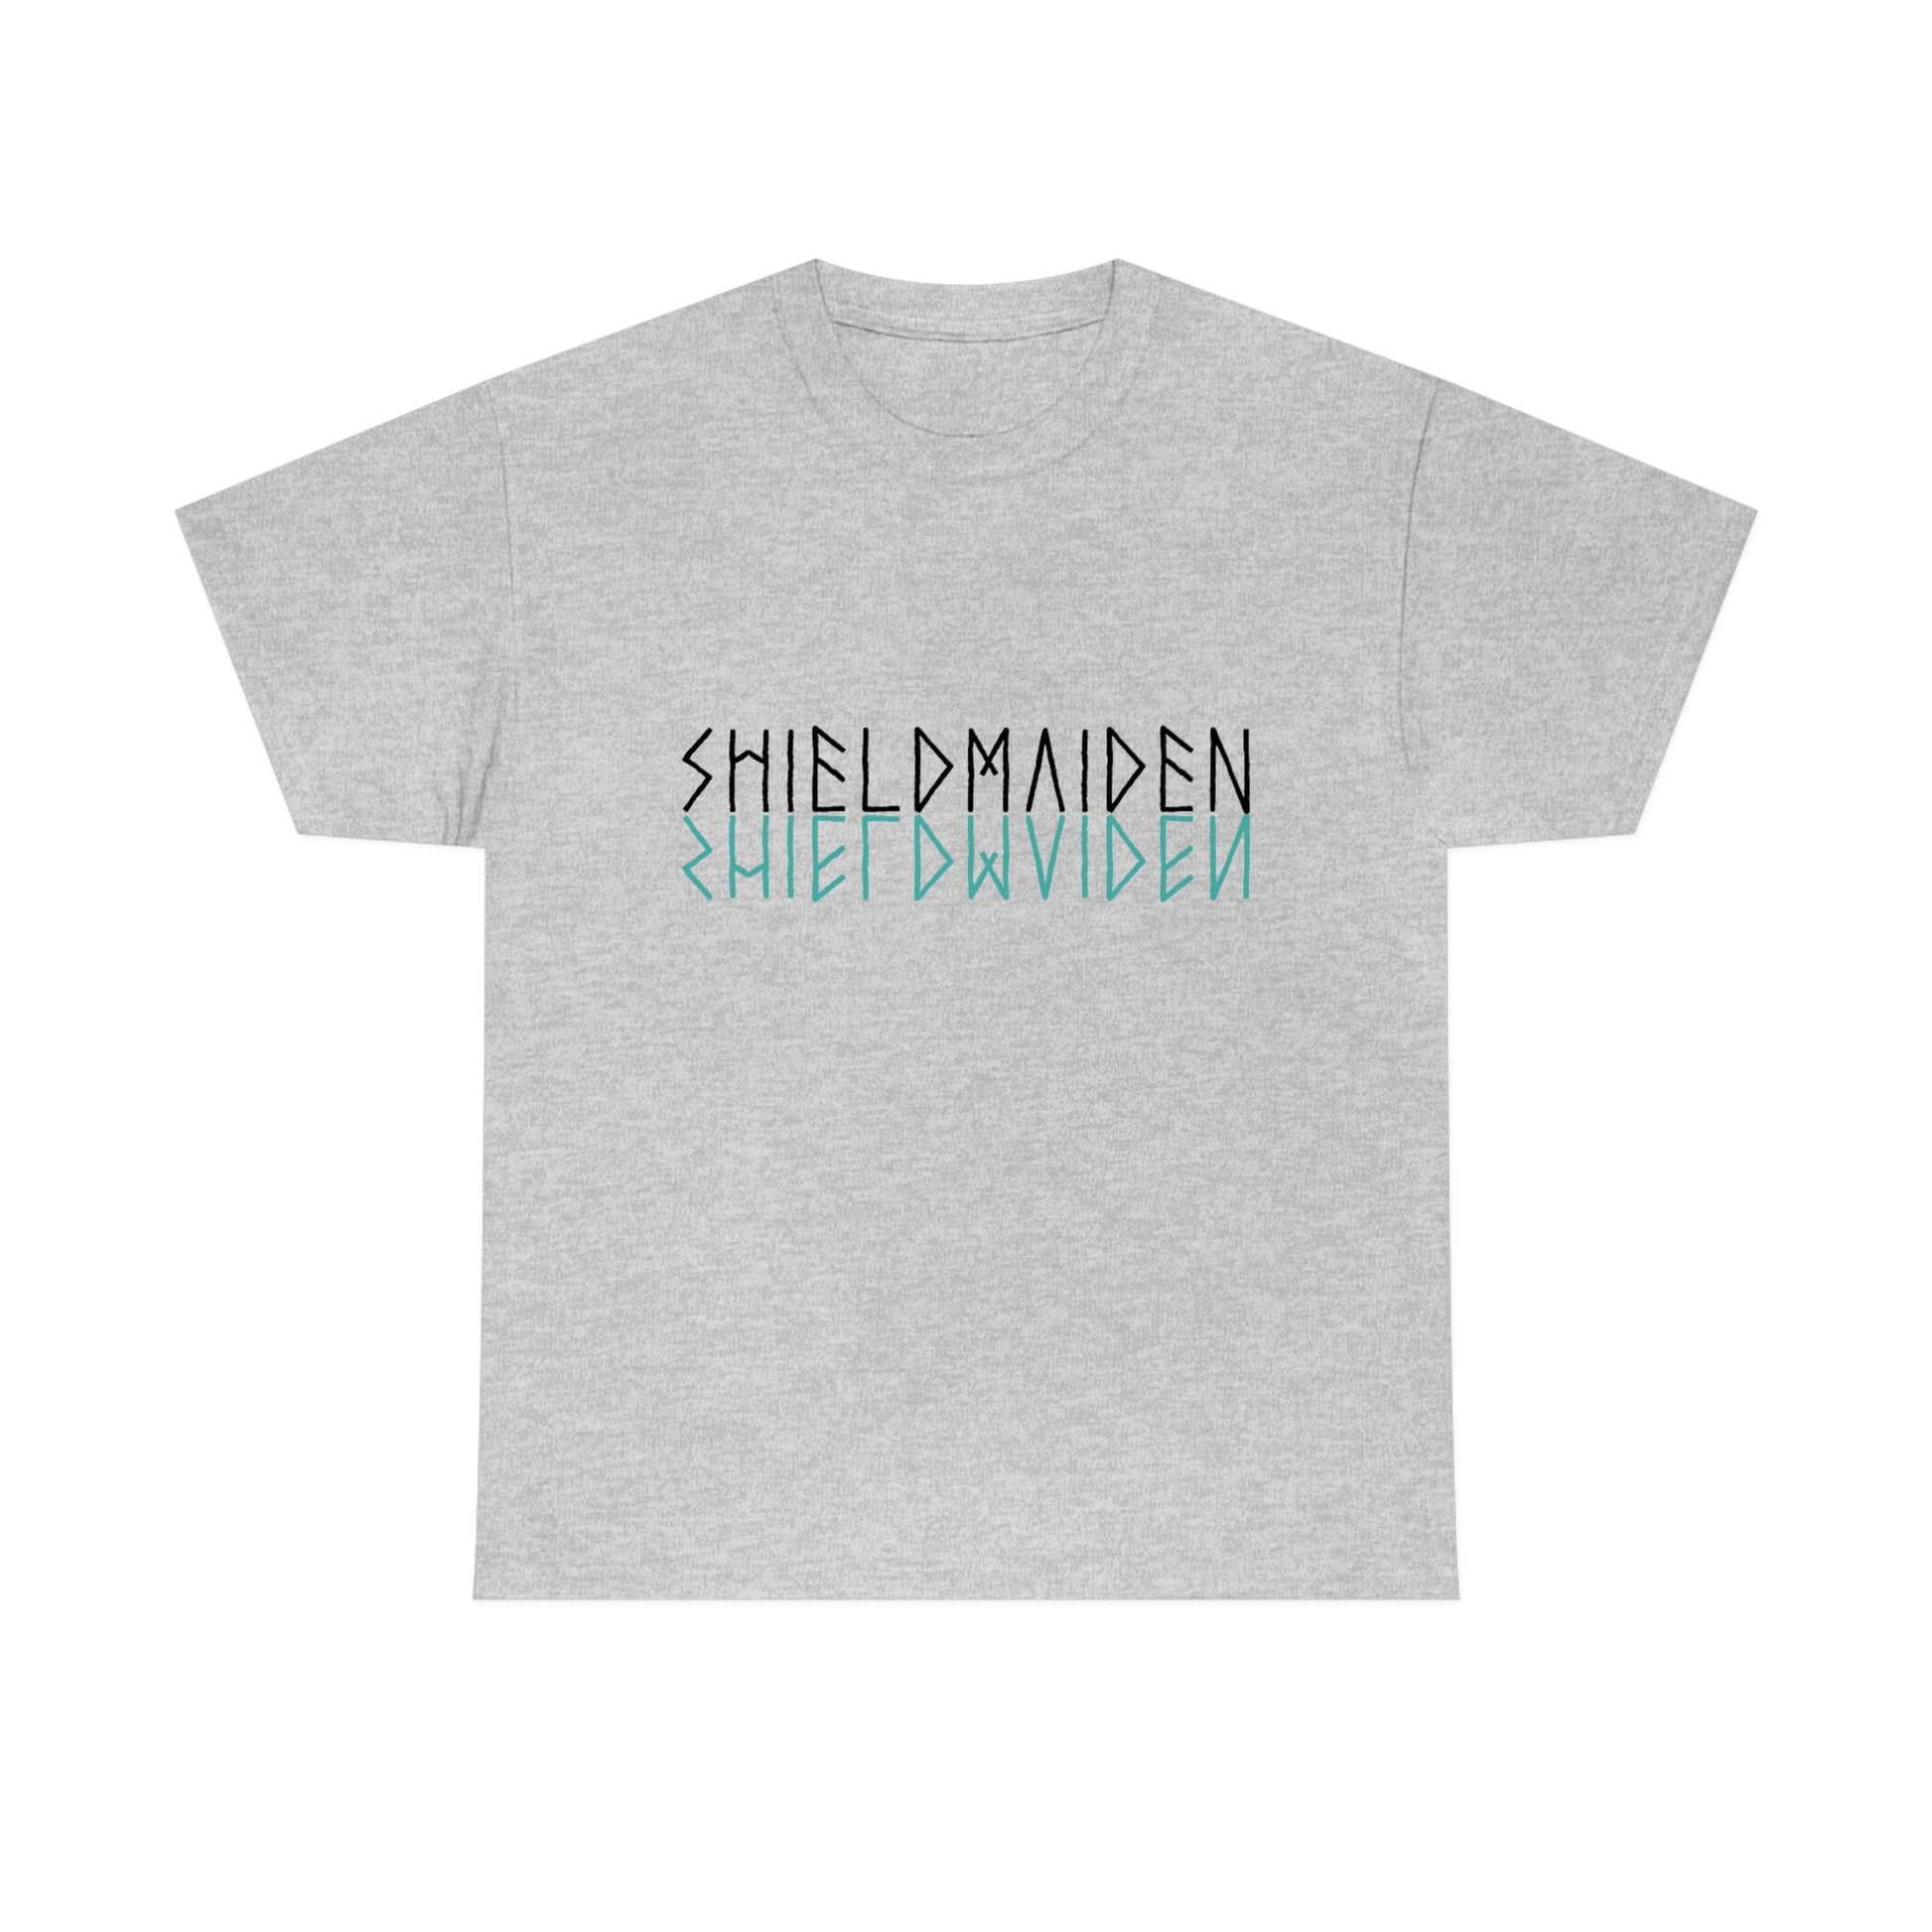 Viking Shieldmaiden T-Shirt, Norse Streetwear Women's Tee